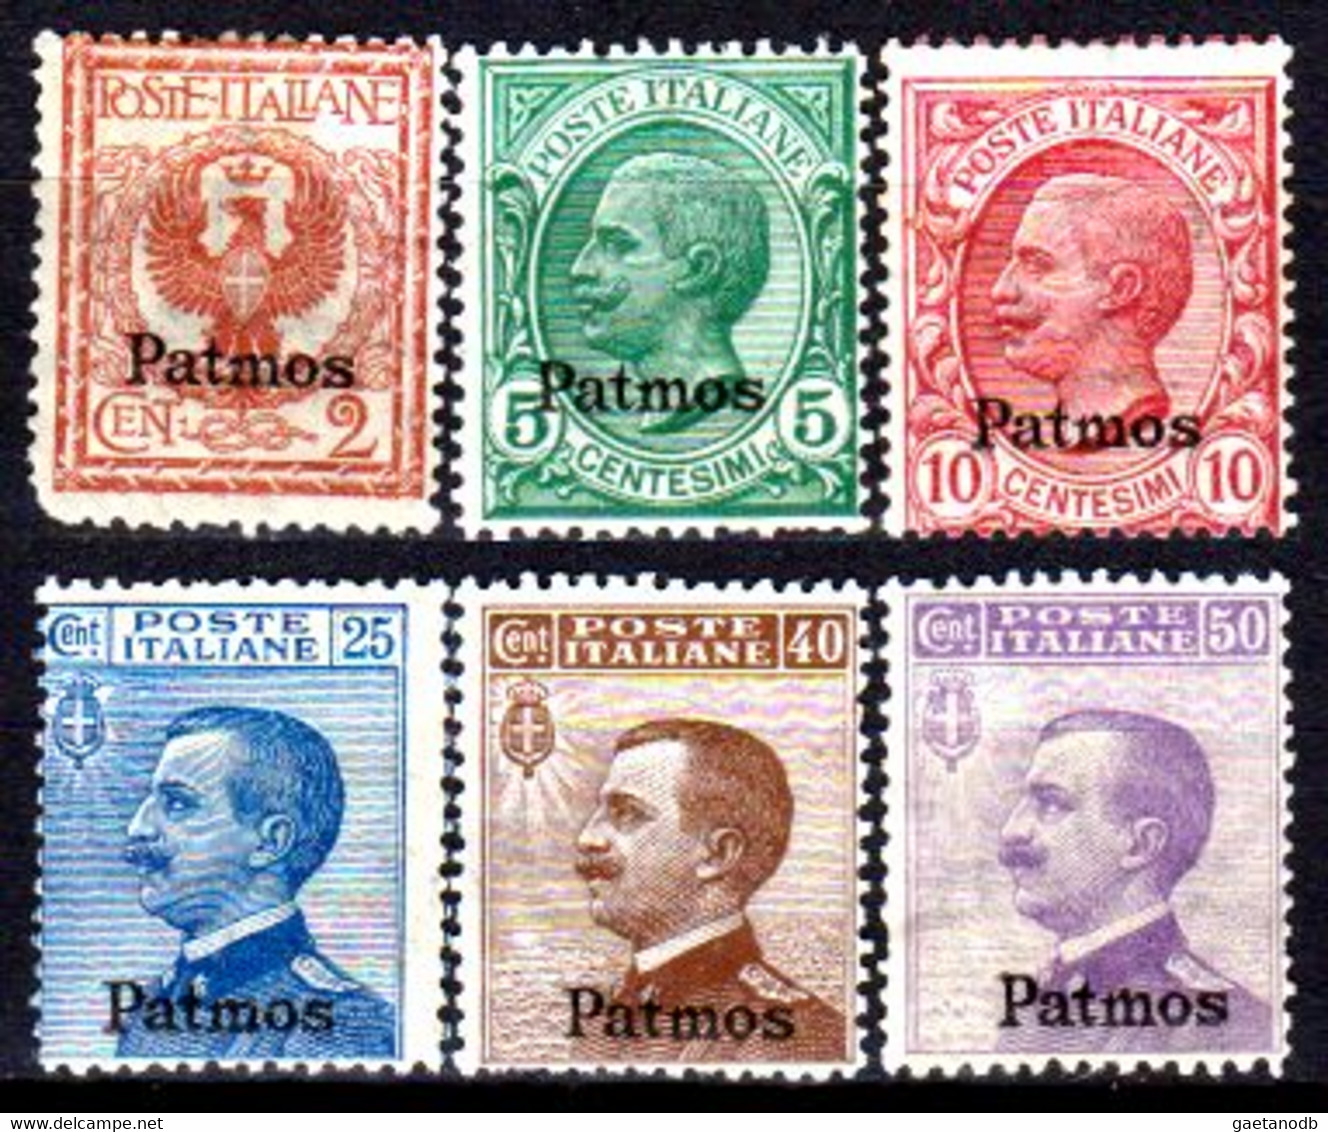 Italia-G 1122 - Colonie Italiane - Egeo: Patmo 1912 (++) MNH - Qualità A Vostro Giudizio. - Egeo (Patmo)